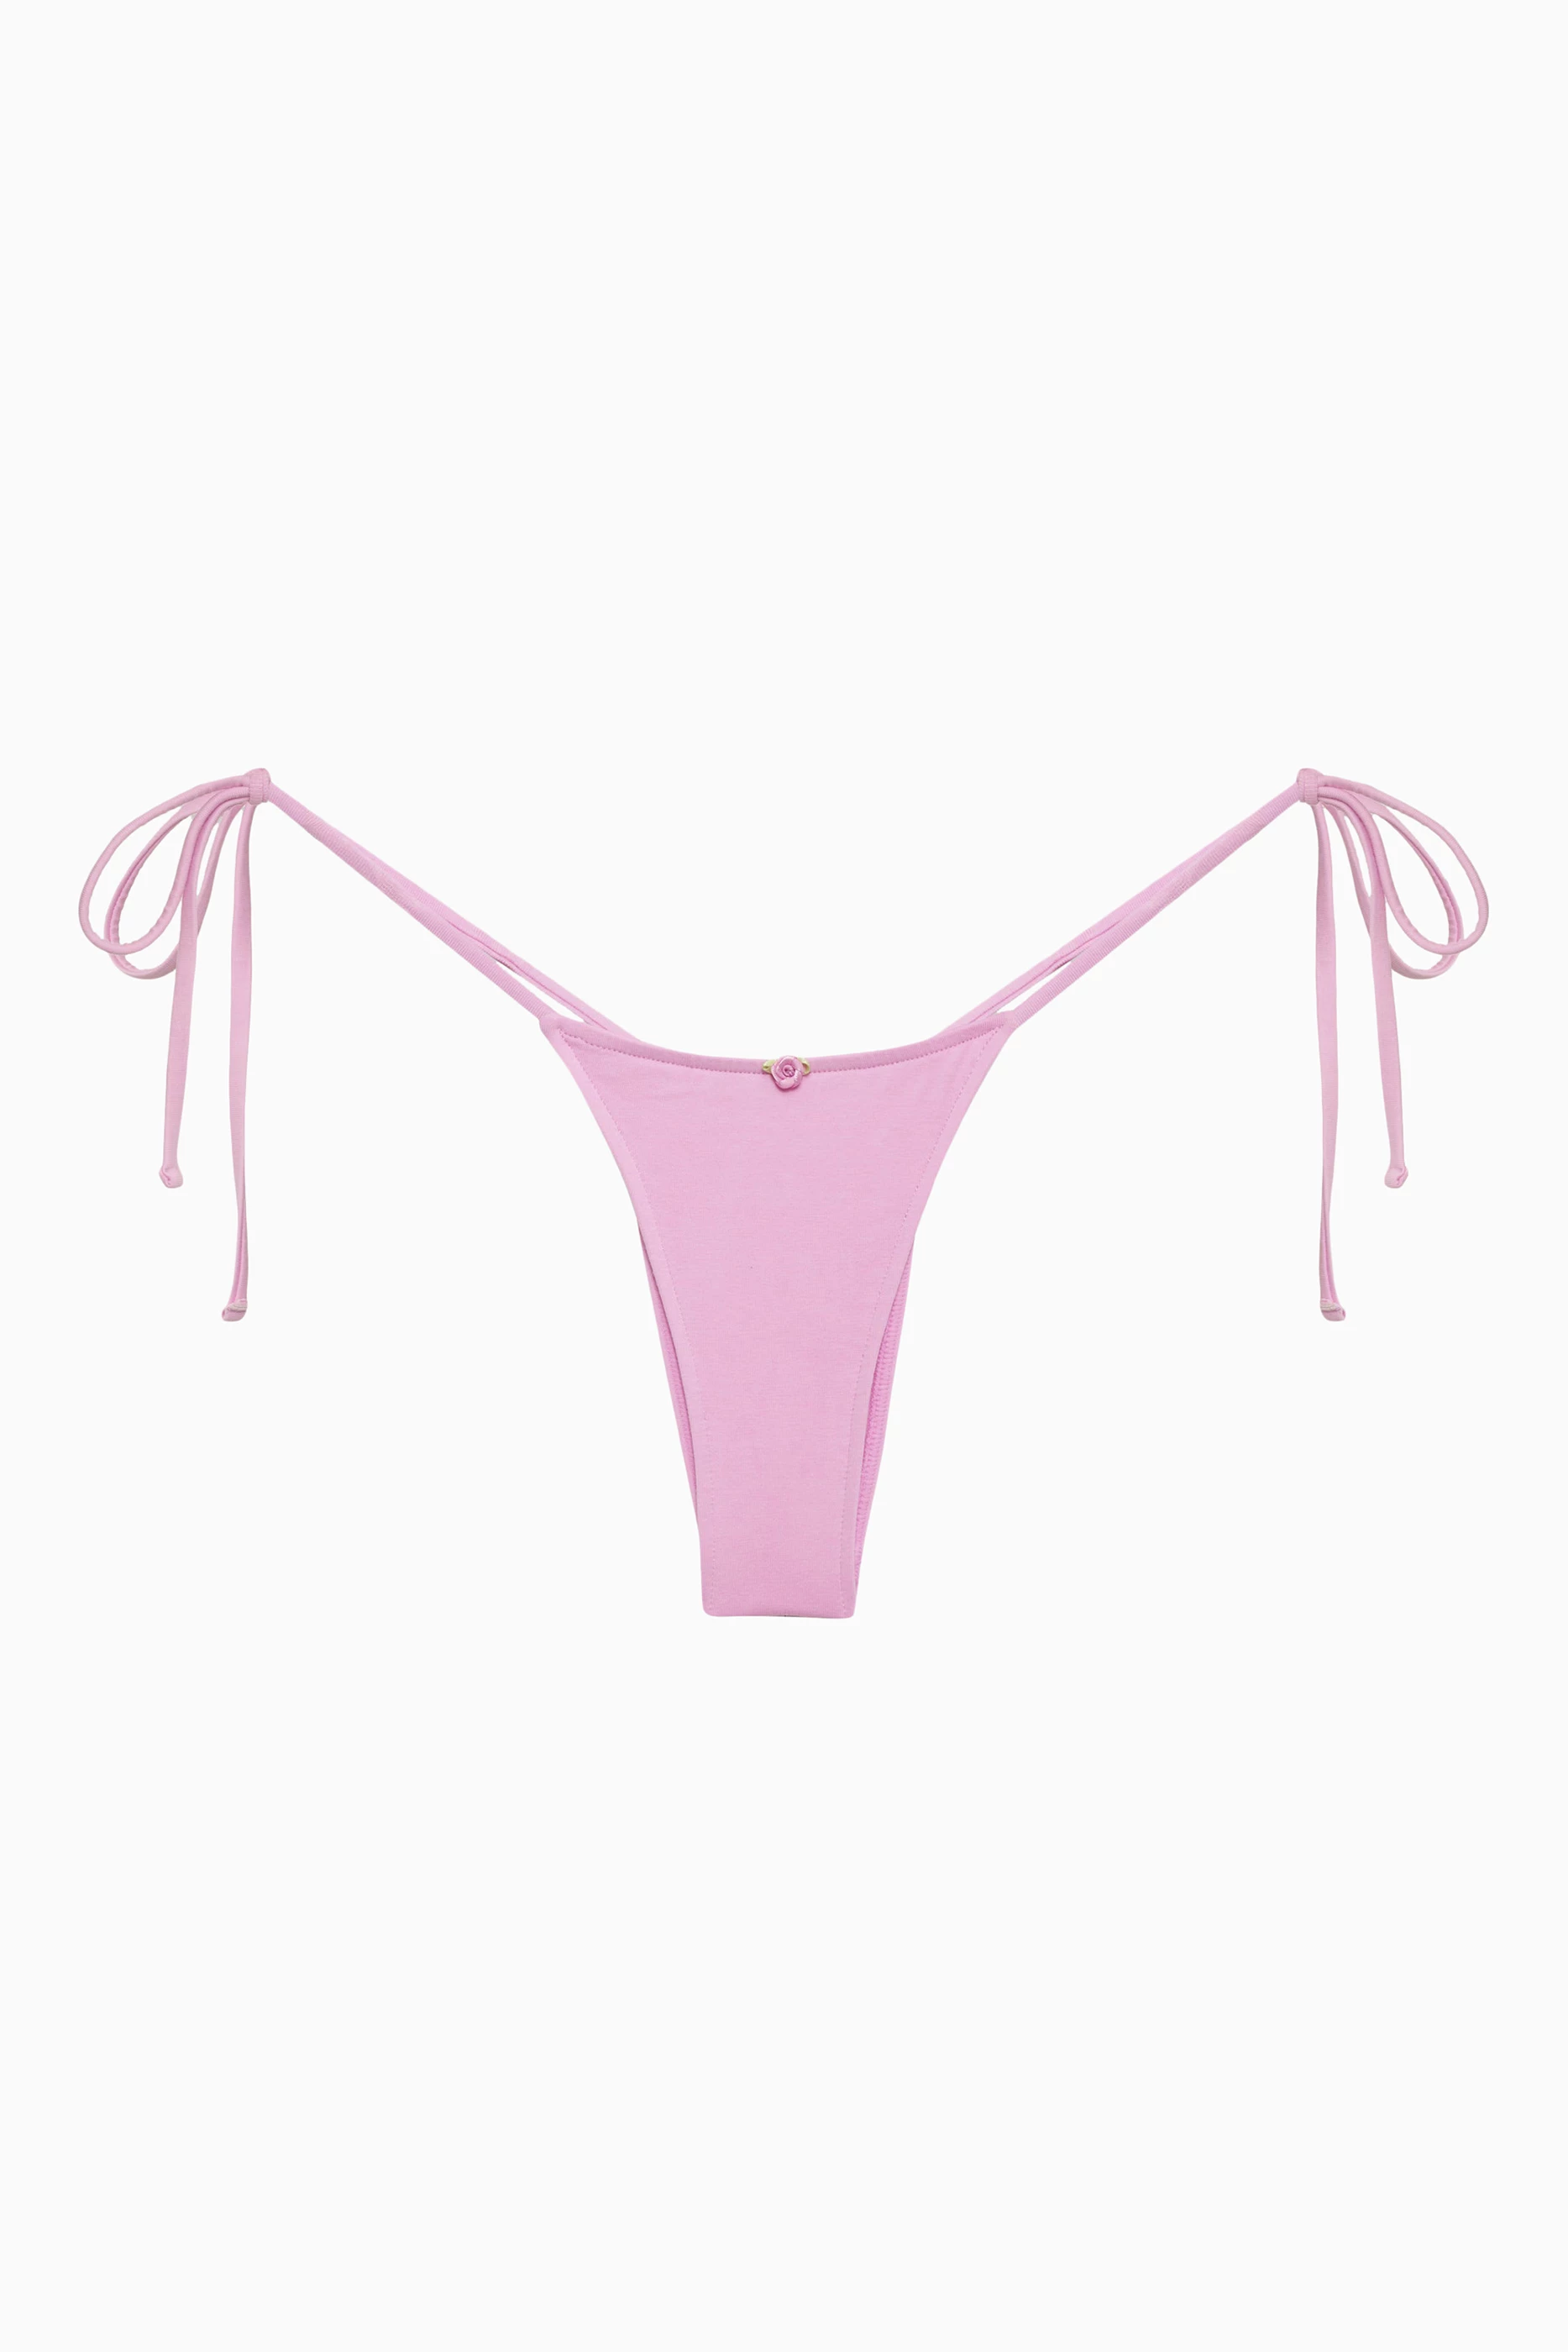 Buy Adjustable String Bikini Panty in Jeddah